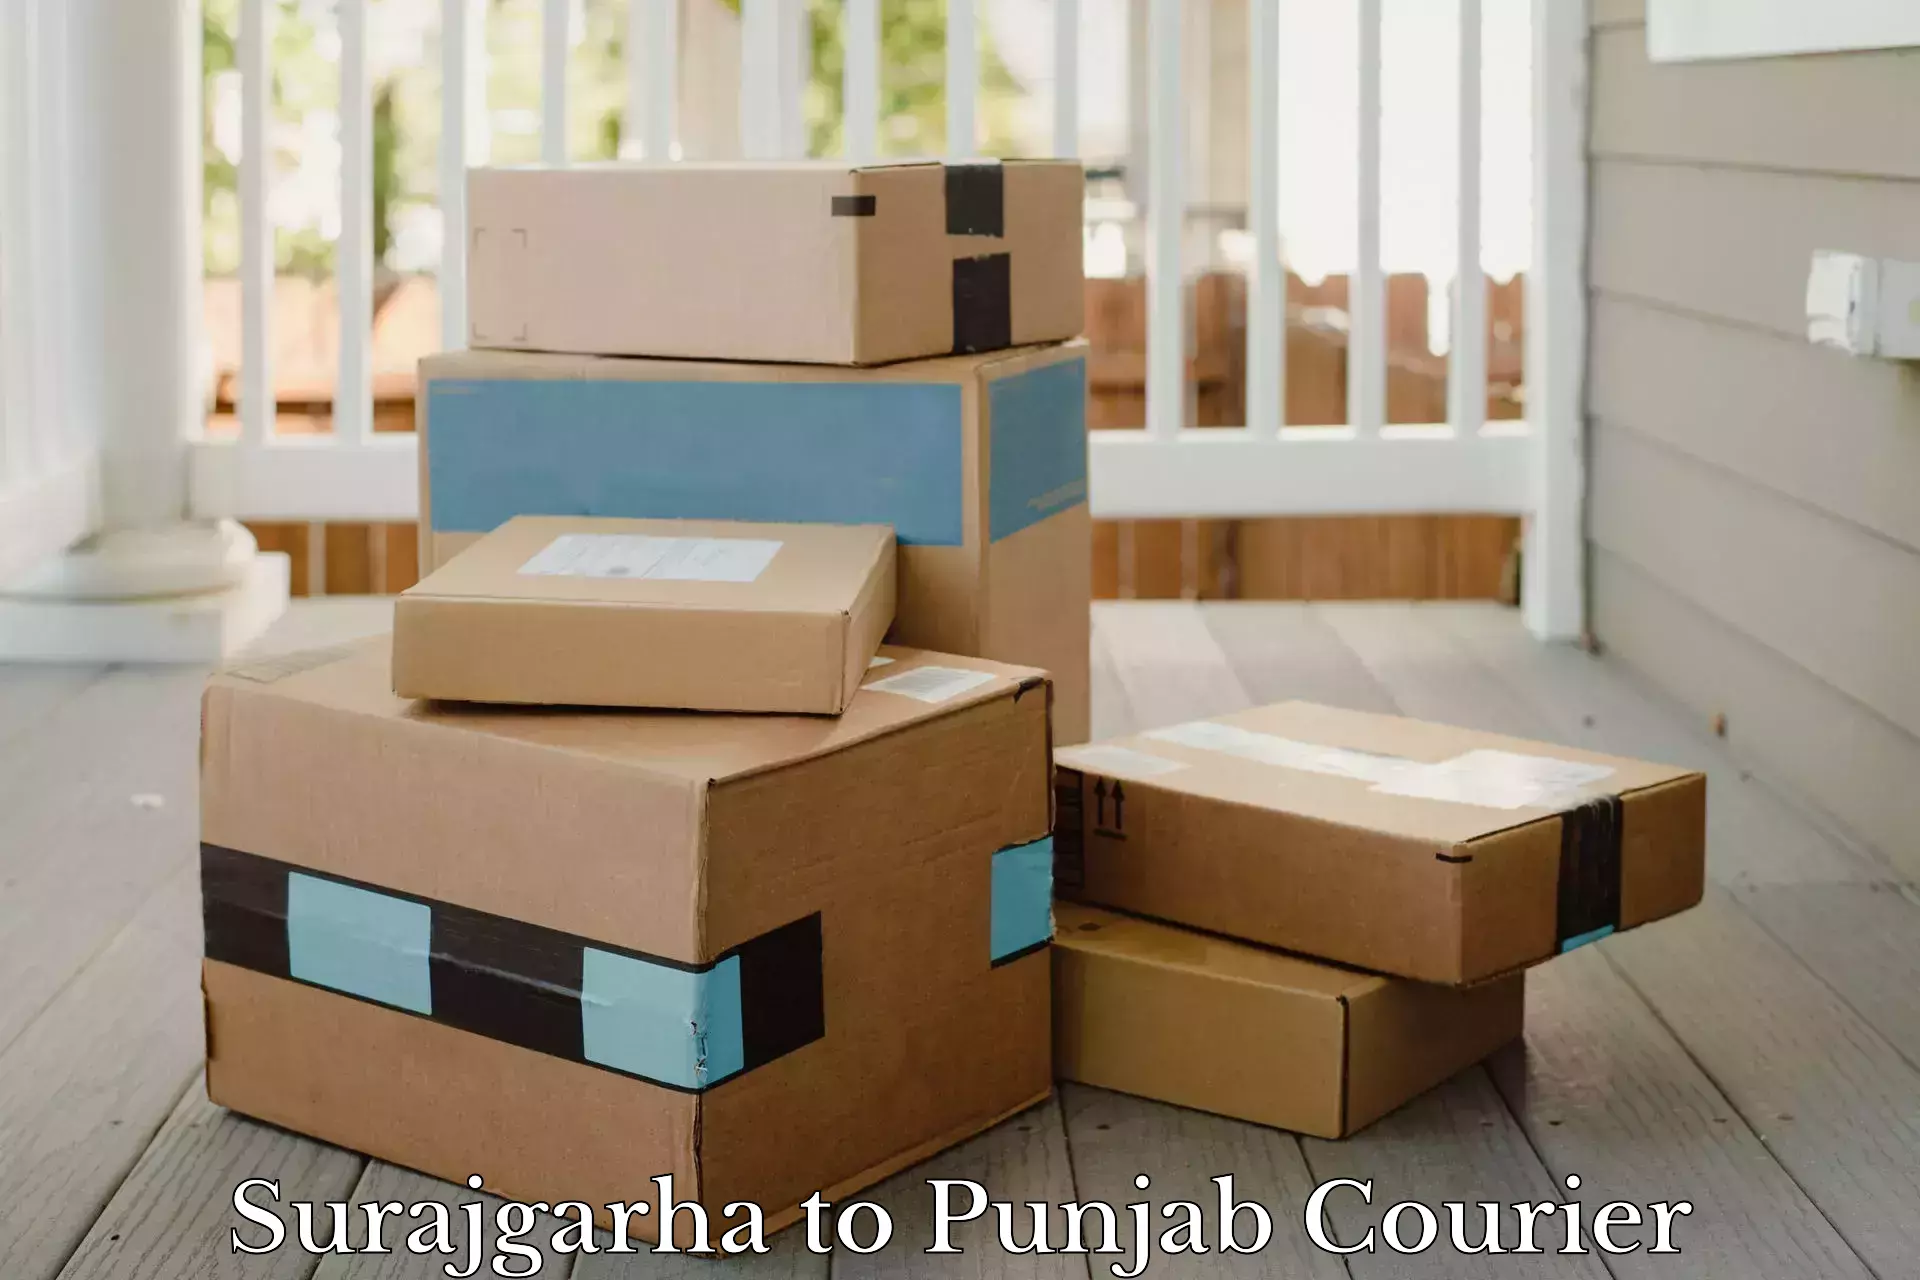 Large package courier Surajgarha to Talwara